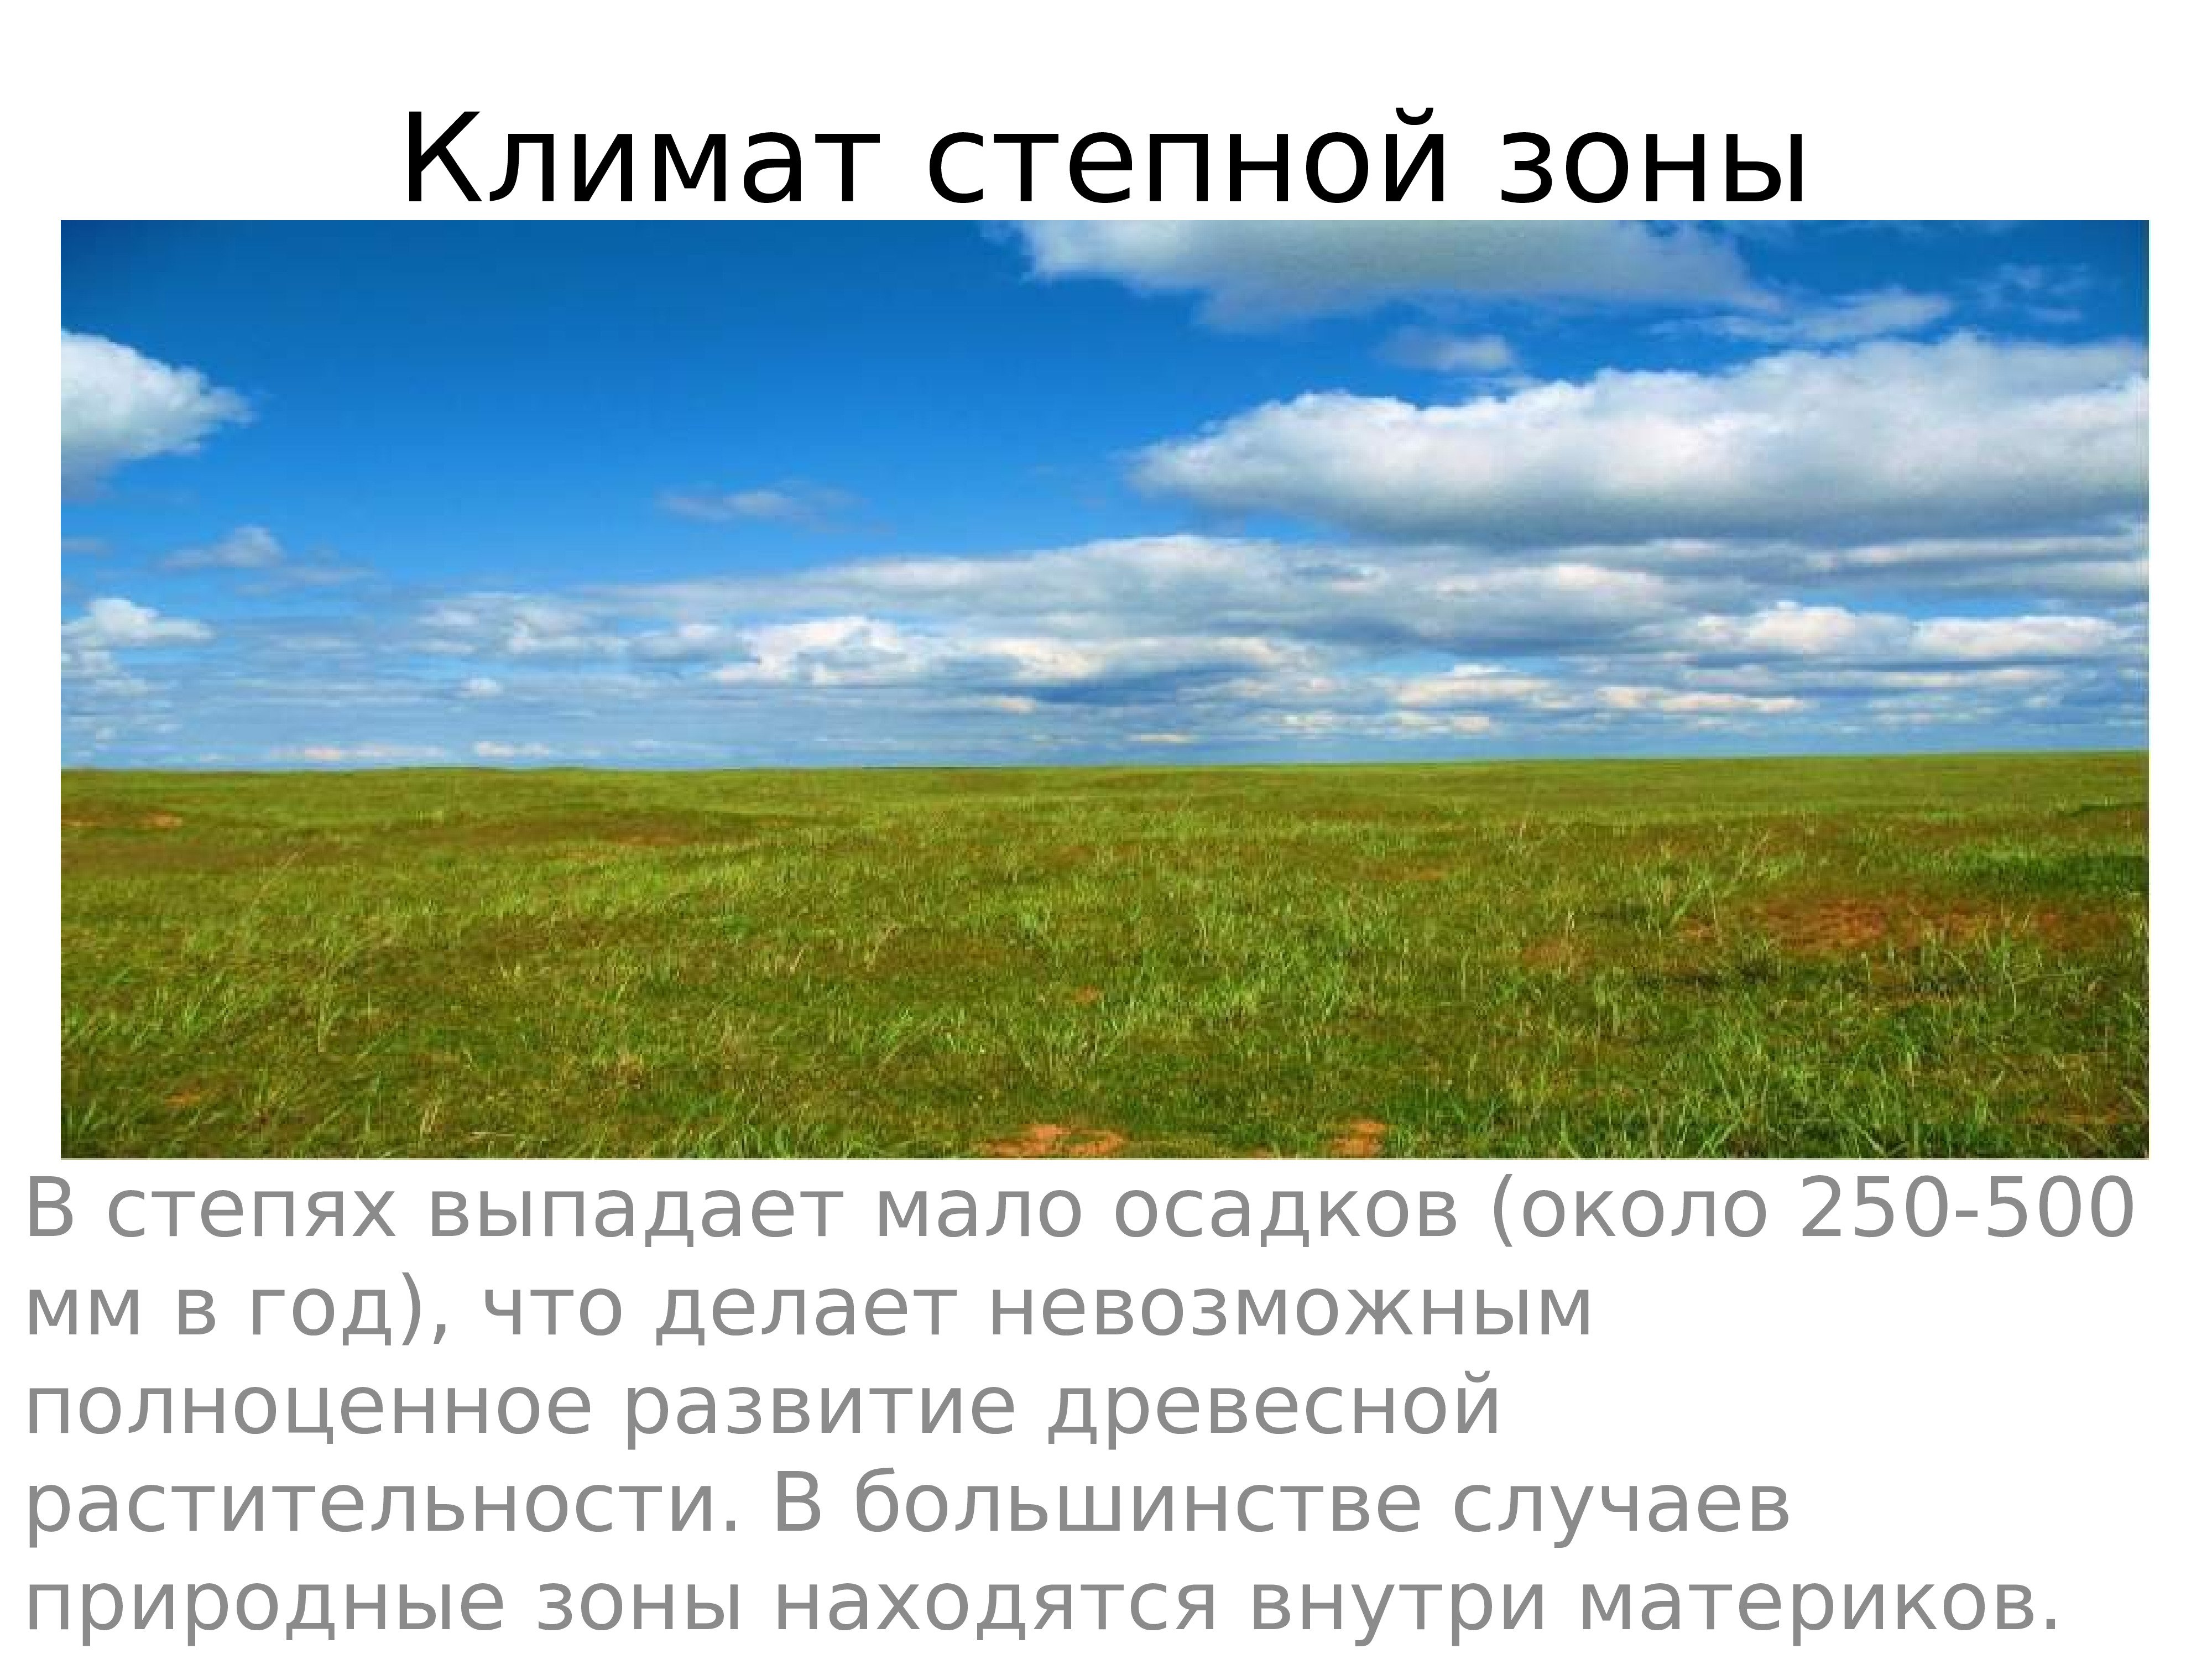 Какие территории россии занимает зона степи. Почва лесостепи и степи в Евразии. Природные зоны России степи и лесостепи. Зоны лесостепей и степей климат. Климат лесостепной и Степной зоны.